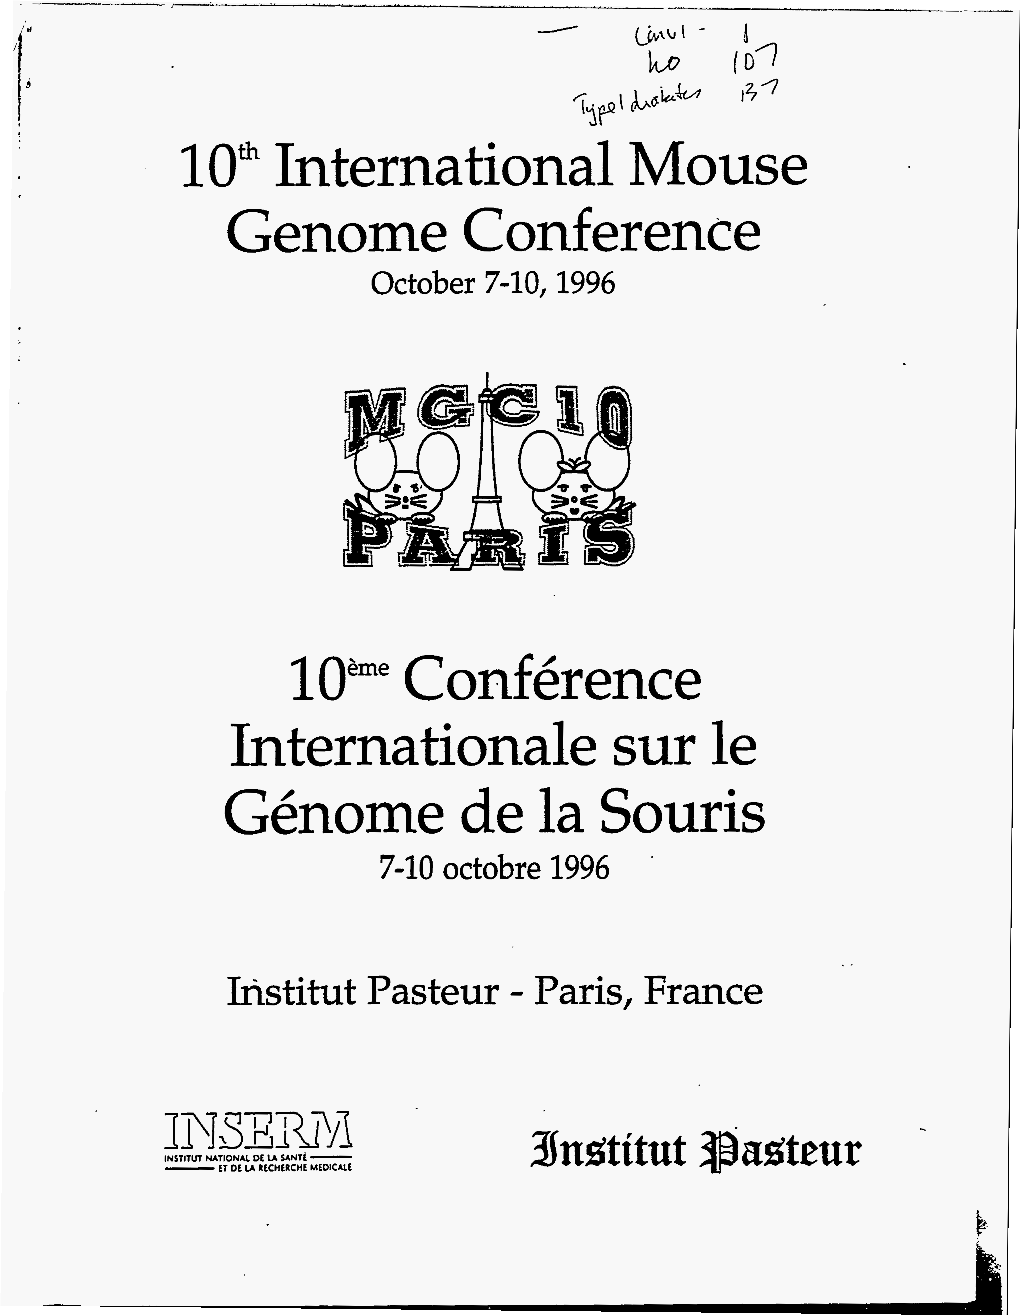 Genome De La Souris 7-10 Octobre 1996